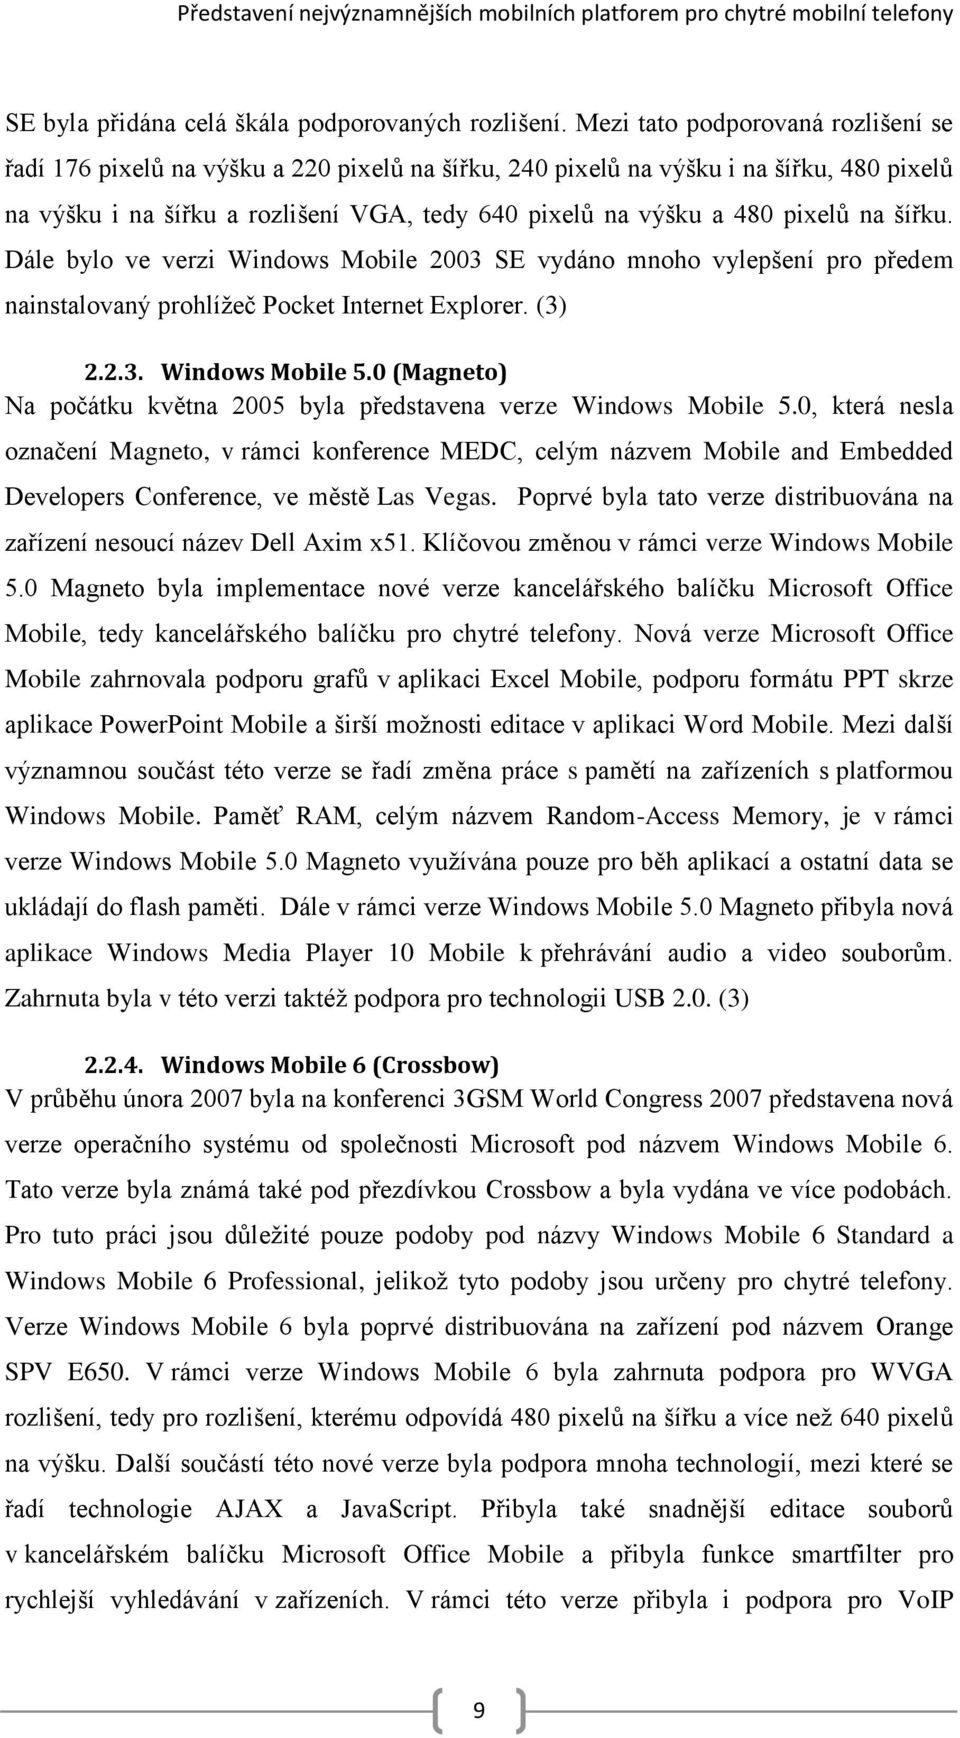 pixelů na šířku. Dále bylo ve verzi Windows Mobile 2003 SE vydáno mnoho vylepšení pro předem nainstalovaný prohlížeč Pocket Internet Explorer. (3) 2.2.3. Windows Mobile 5.